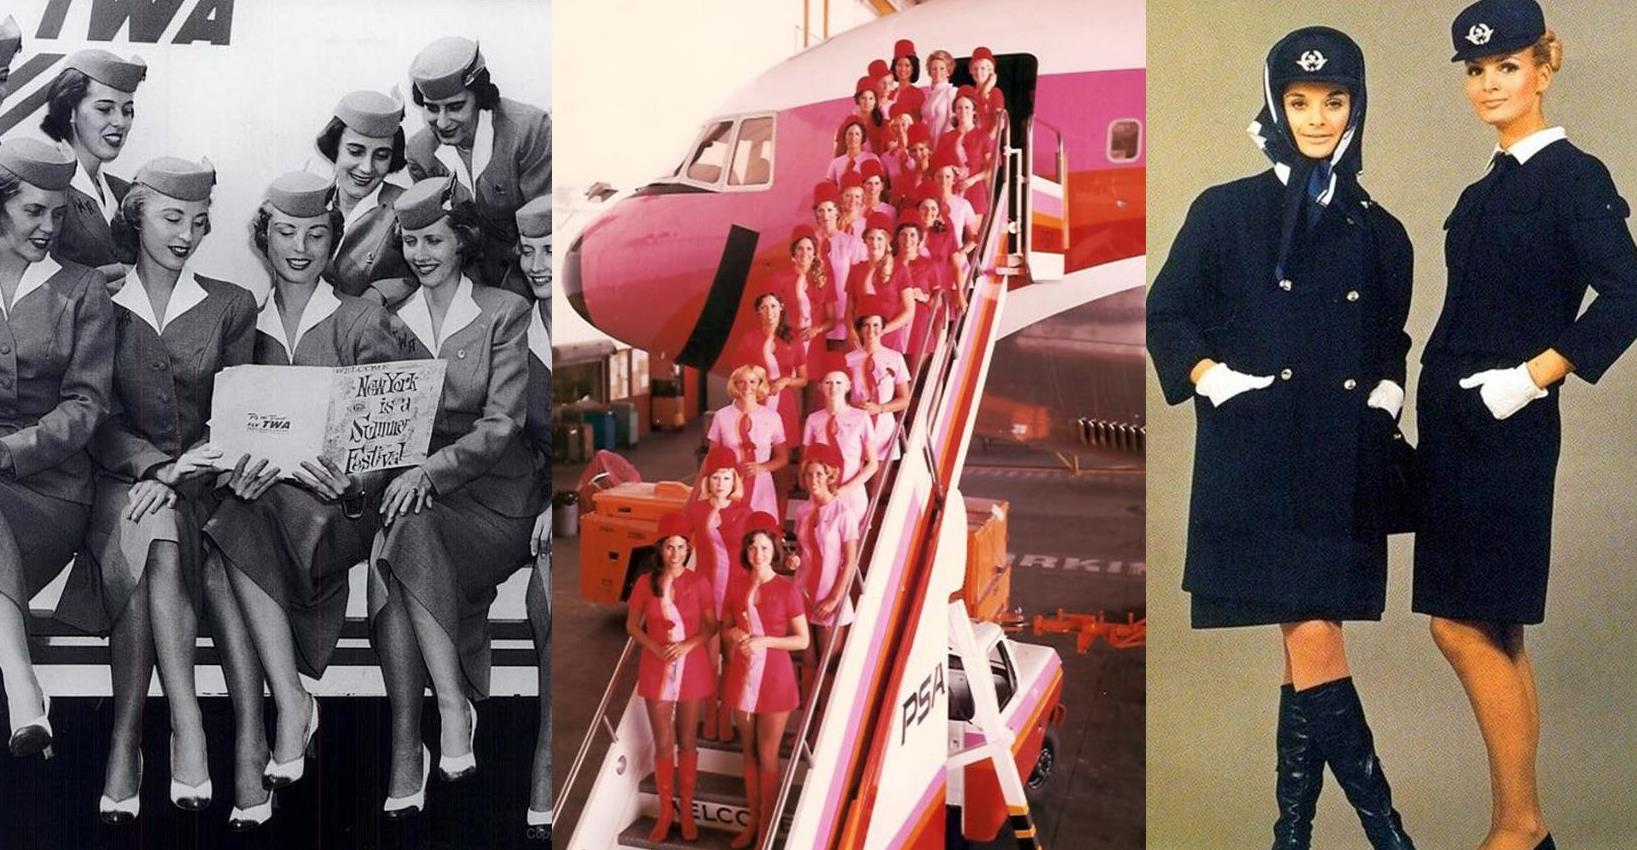 Vintage air hostesses uniform 2